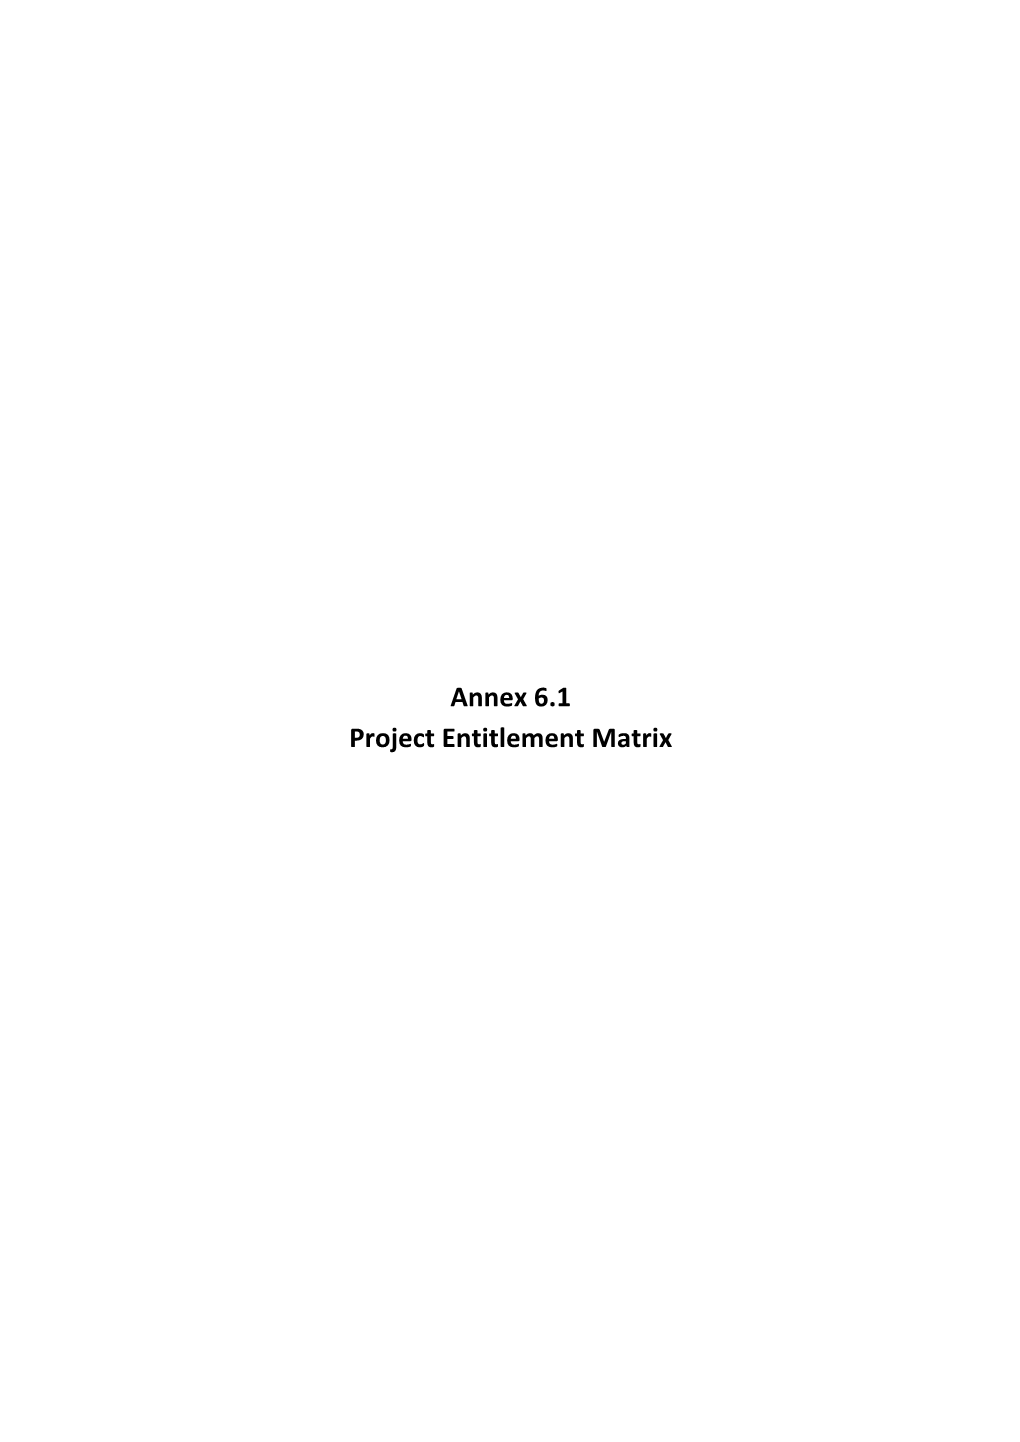 Annex 6.1 Project Entitlement Matrix